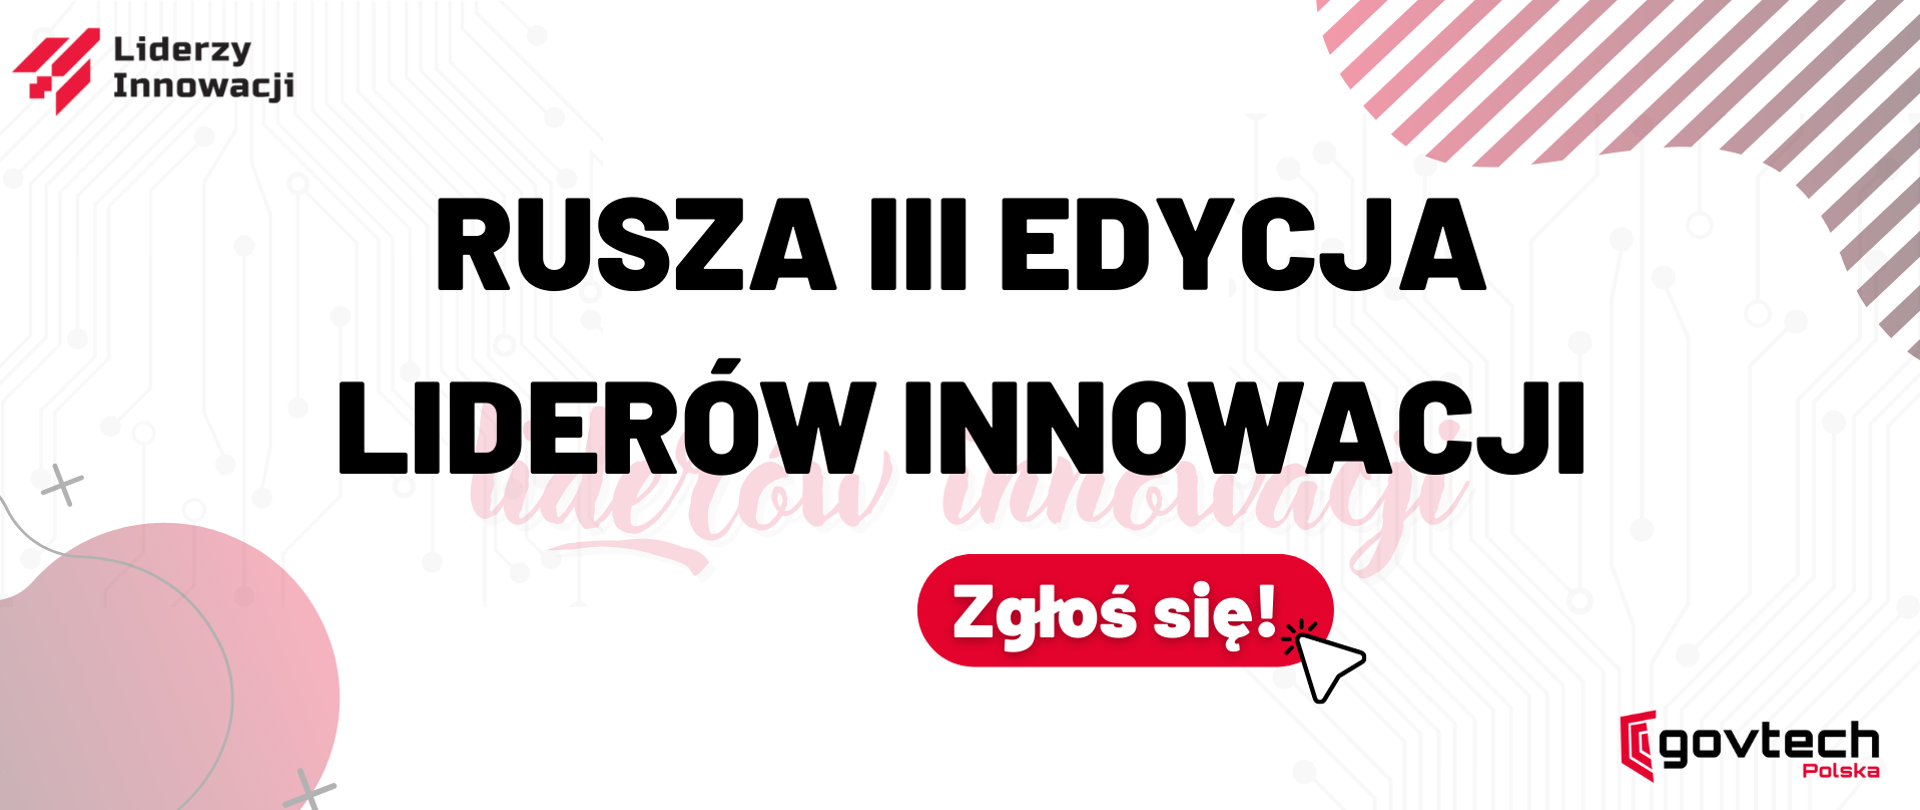 Rusza III edycja Liderów Innowacji
Zgłoś się!